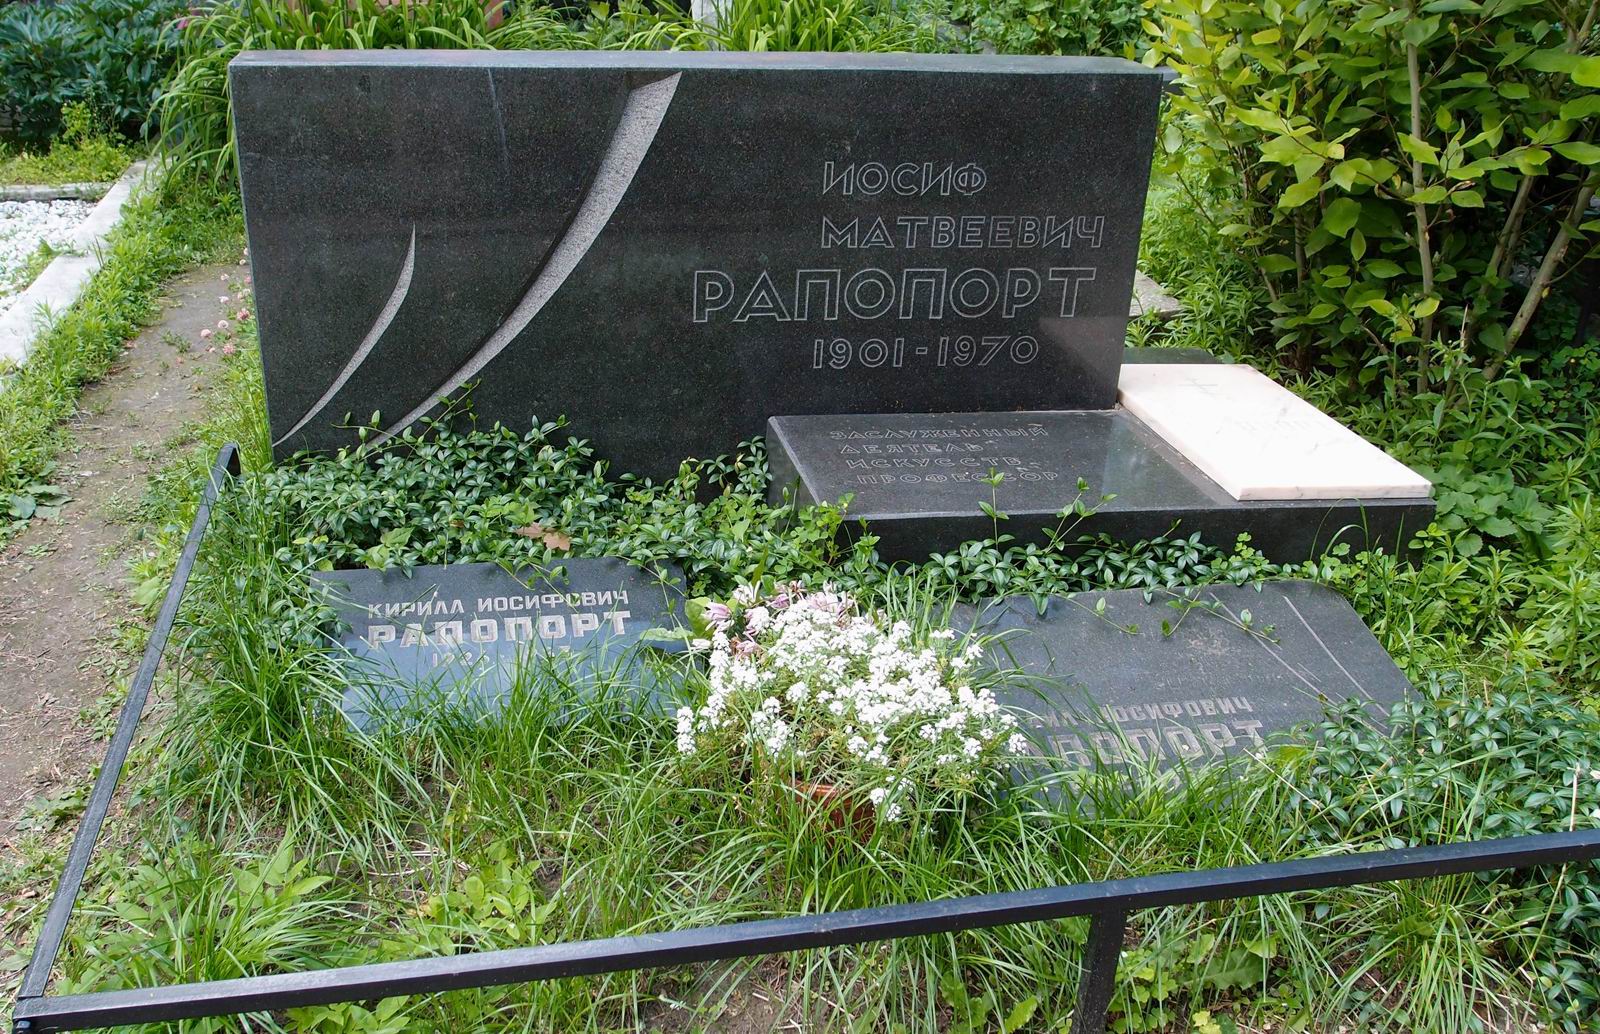 Памятник на могиле Рапопорта И.М. (1901-1970), на Новодевичьем кладбище (2-22-4).